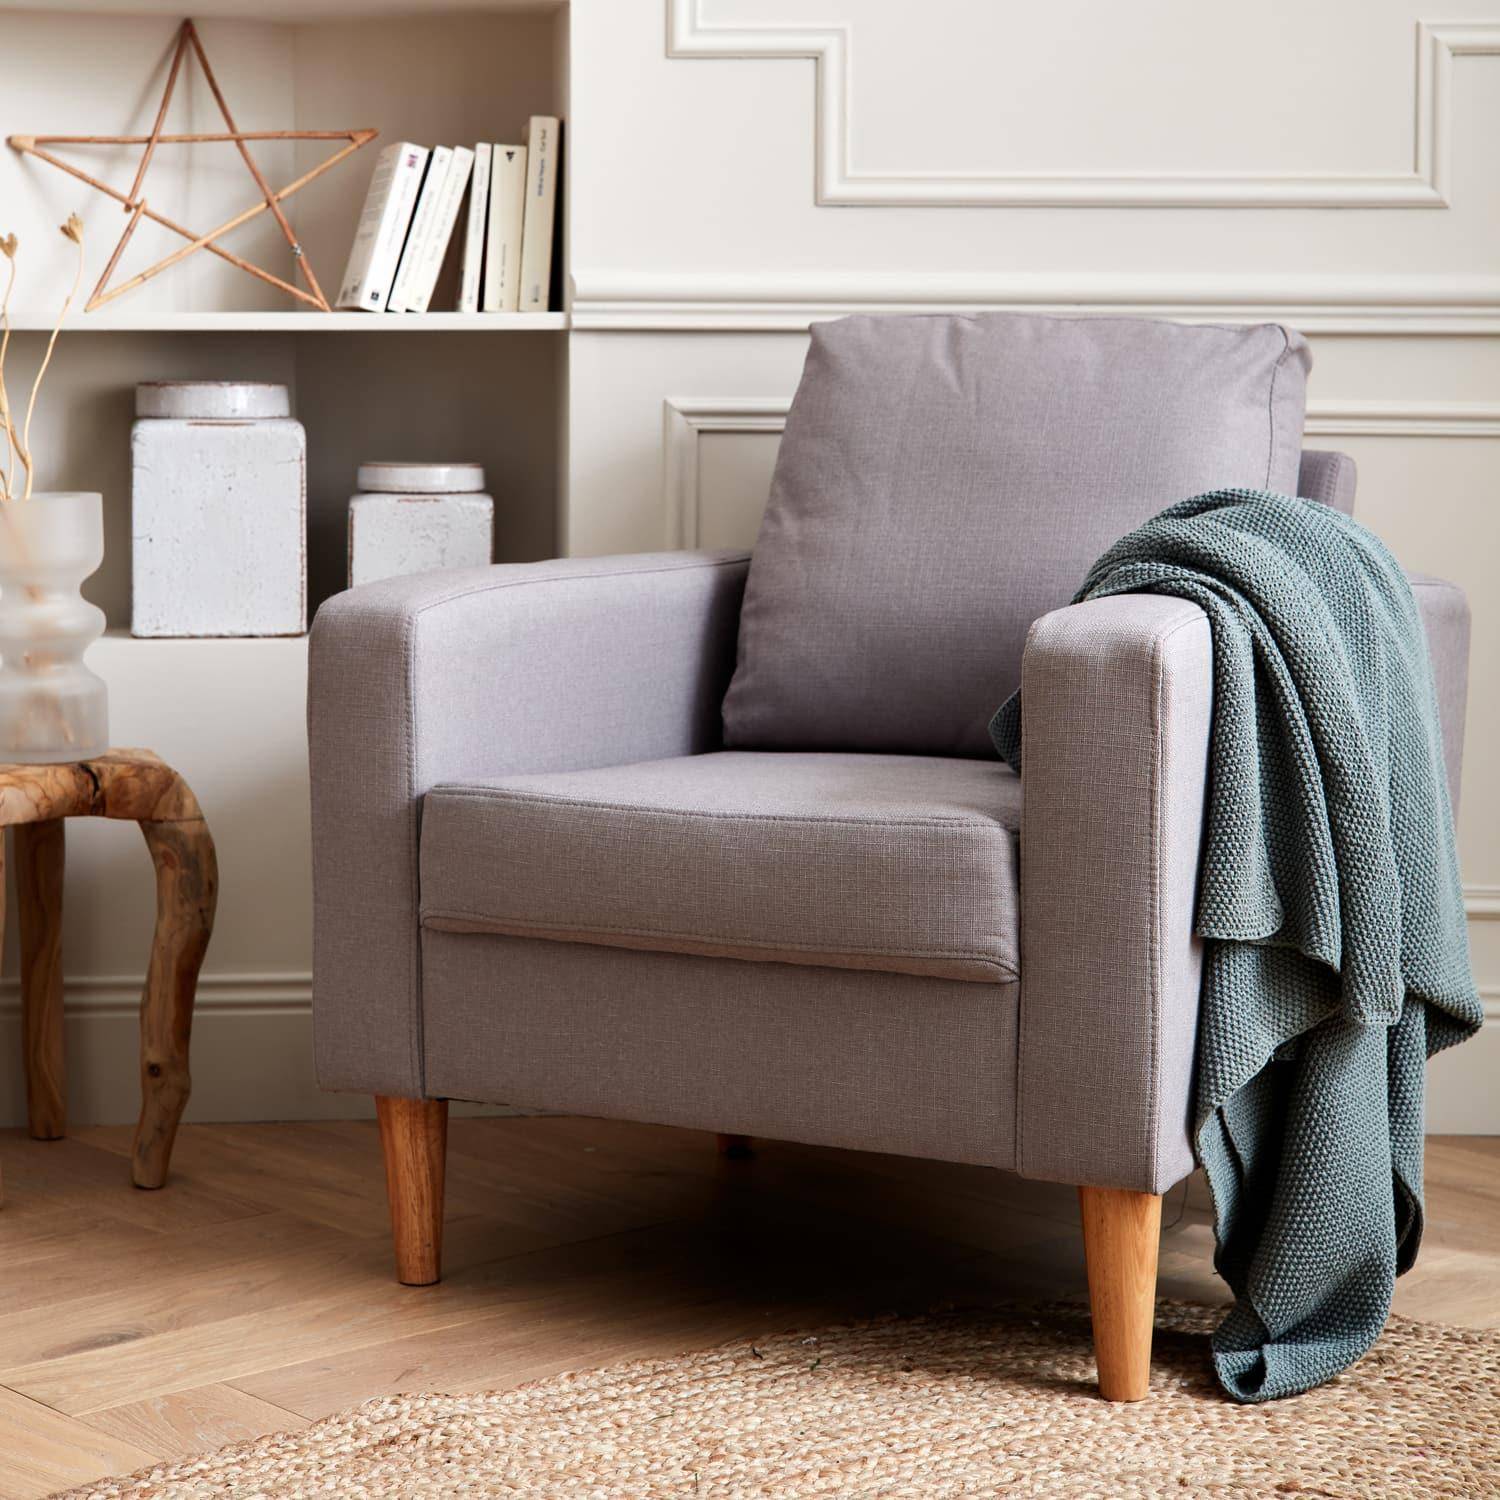 Sillón de tela gris claro - Bjorn - Sillón 1 plaza fijo recto patas madera, sillón escandinavo   Photo1